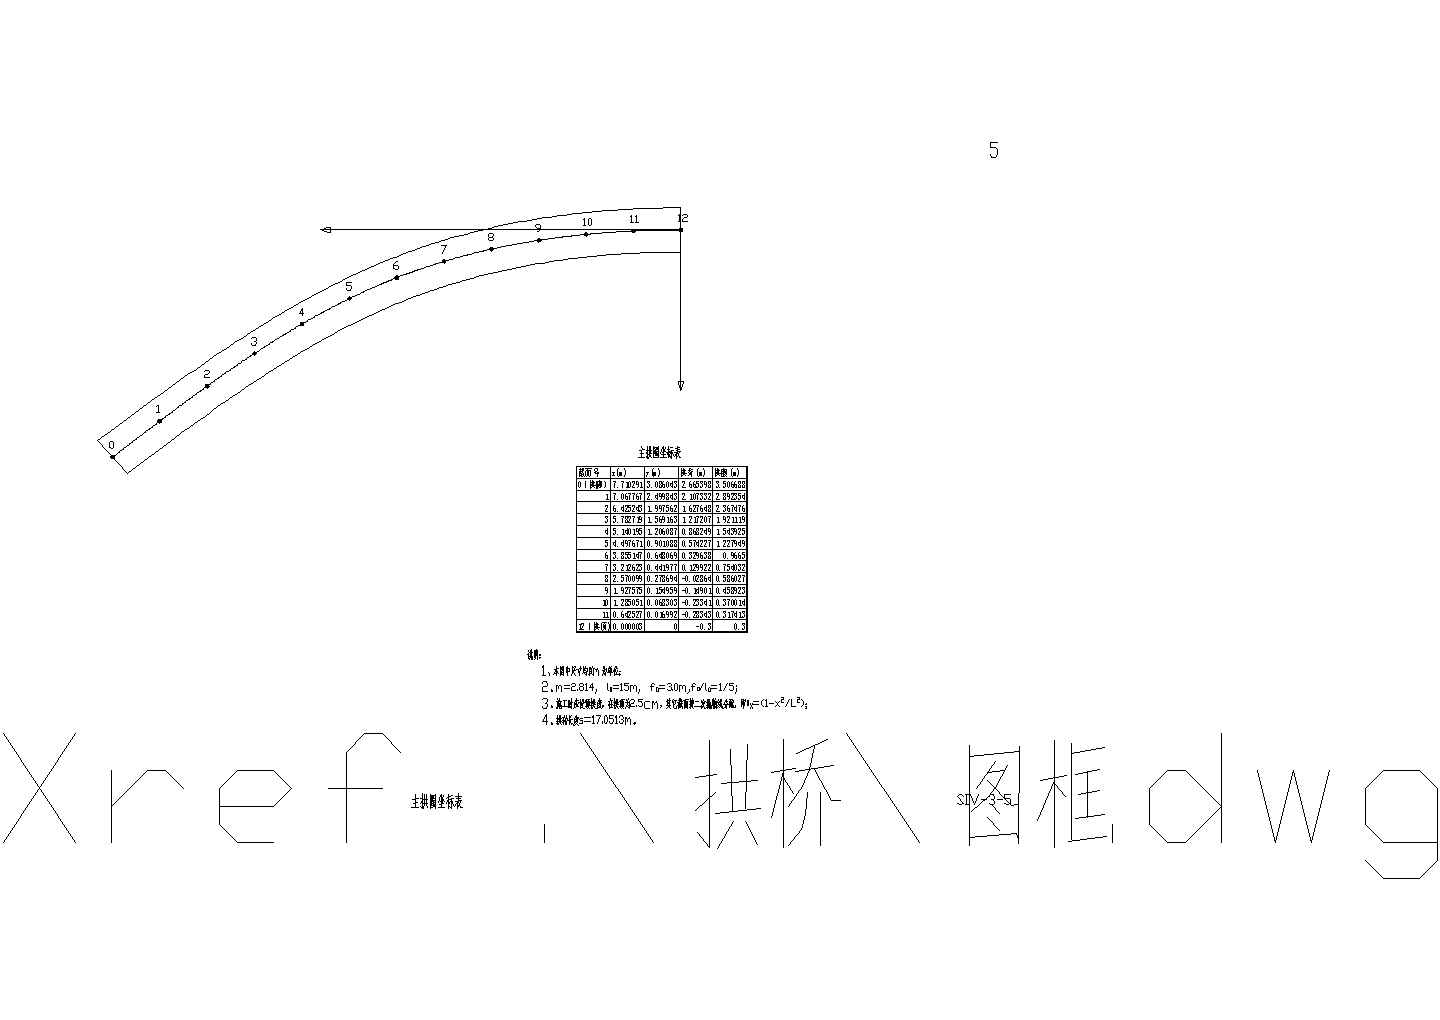 钢筋混凝土拱桥设计施工图